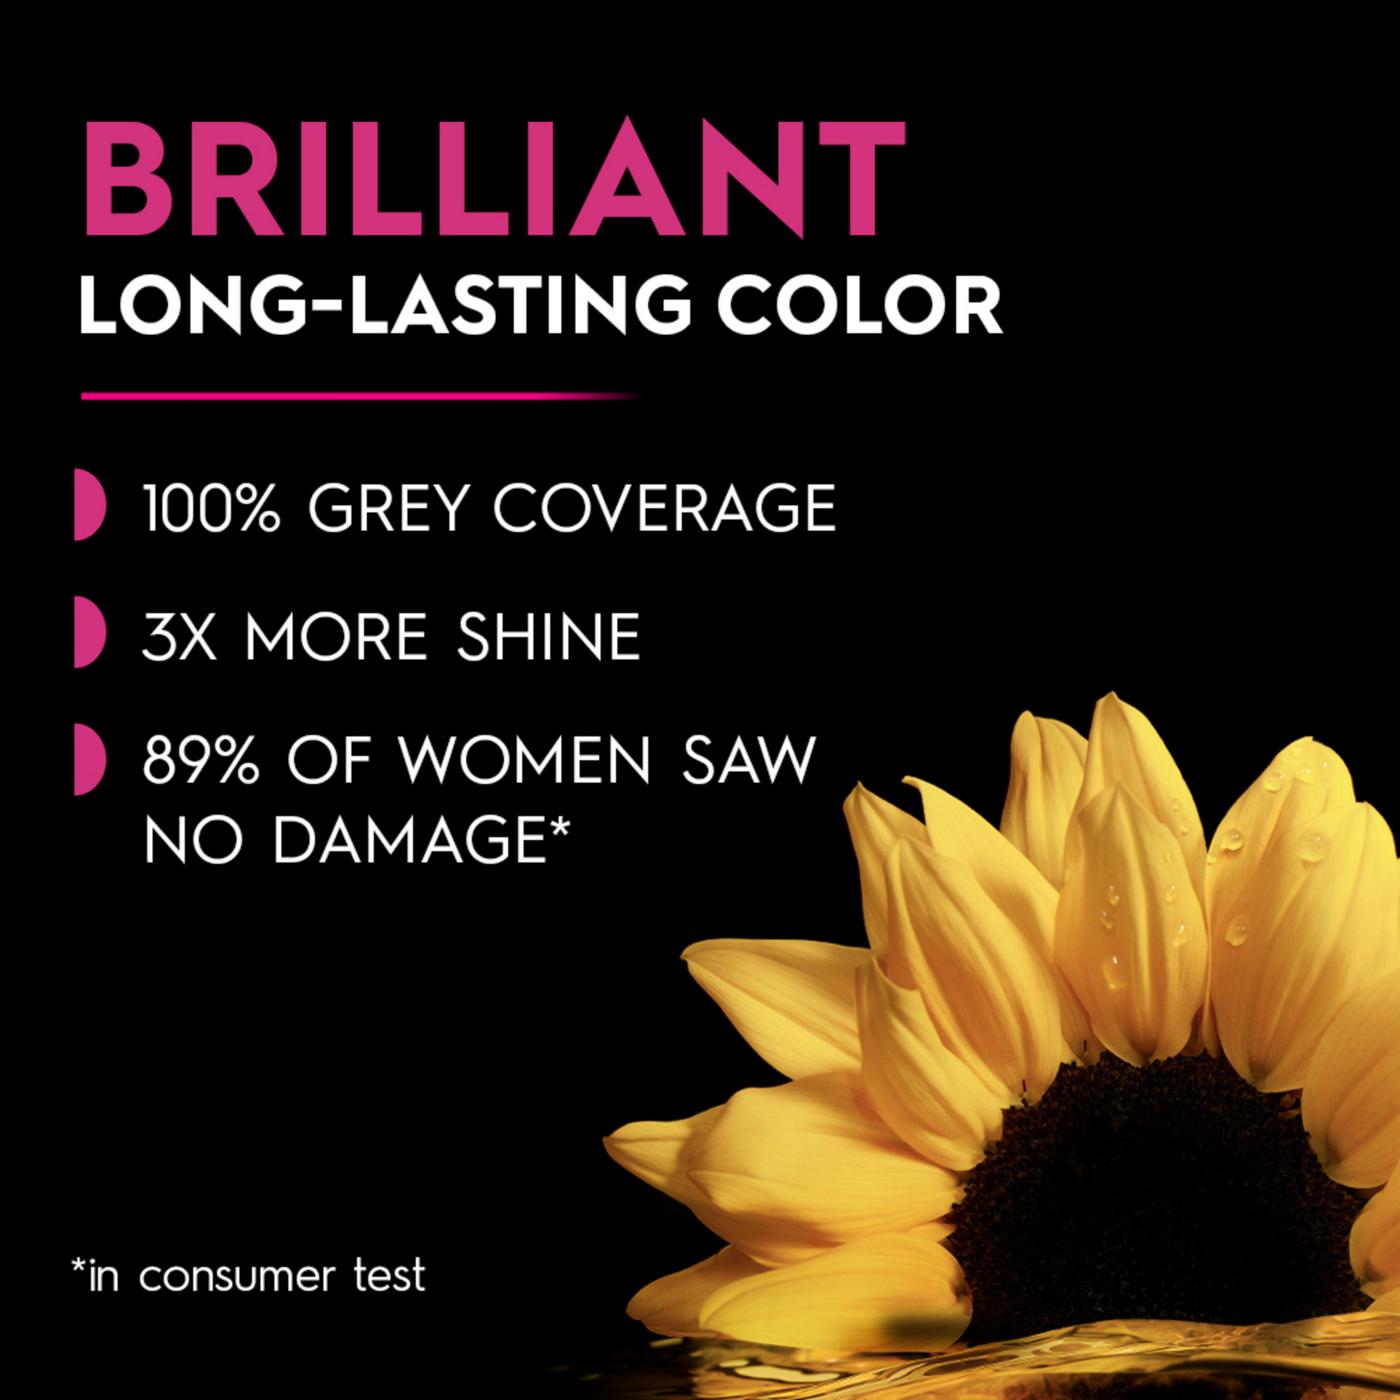 Garnier Olia Oil Powered Ammonia Free Permanent Hair Color 7.20 Dark Rose Quartz; image 13 of 16